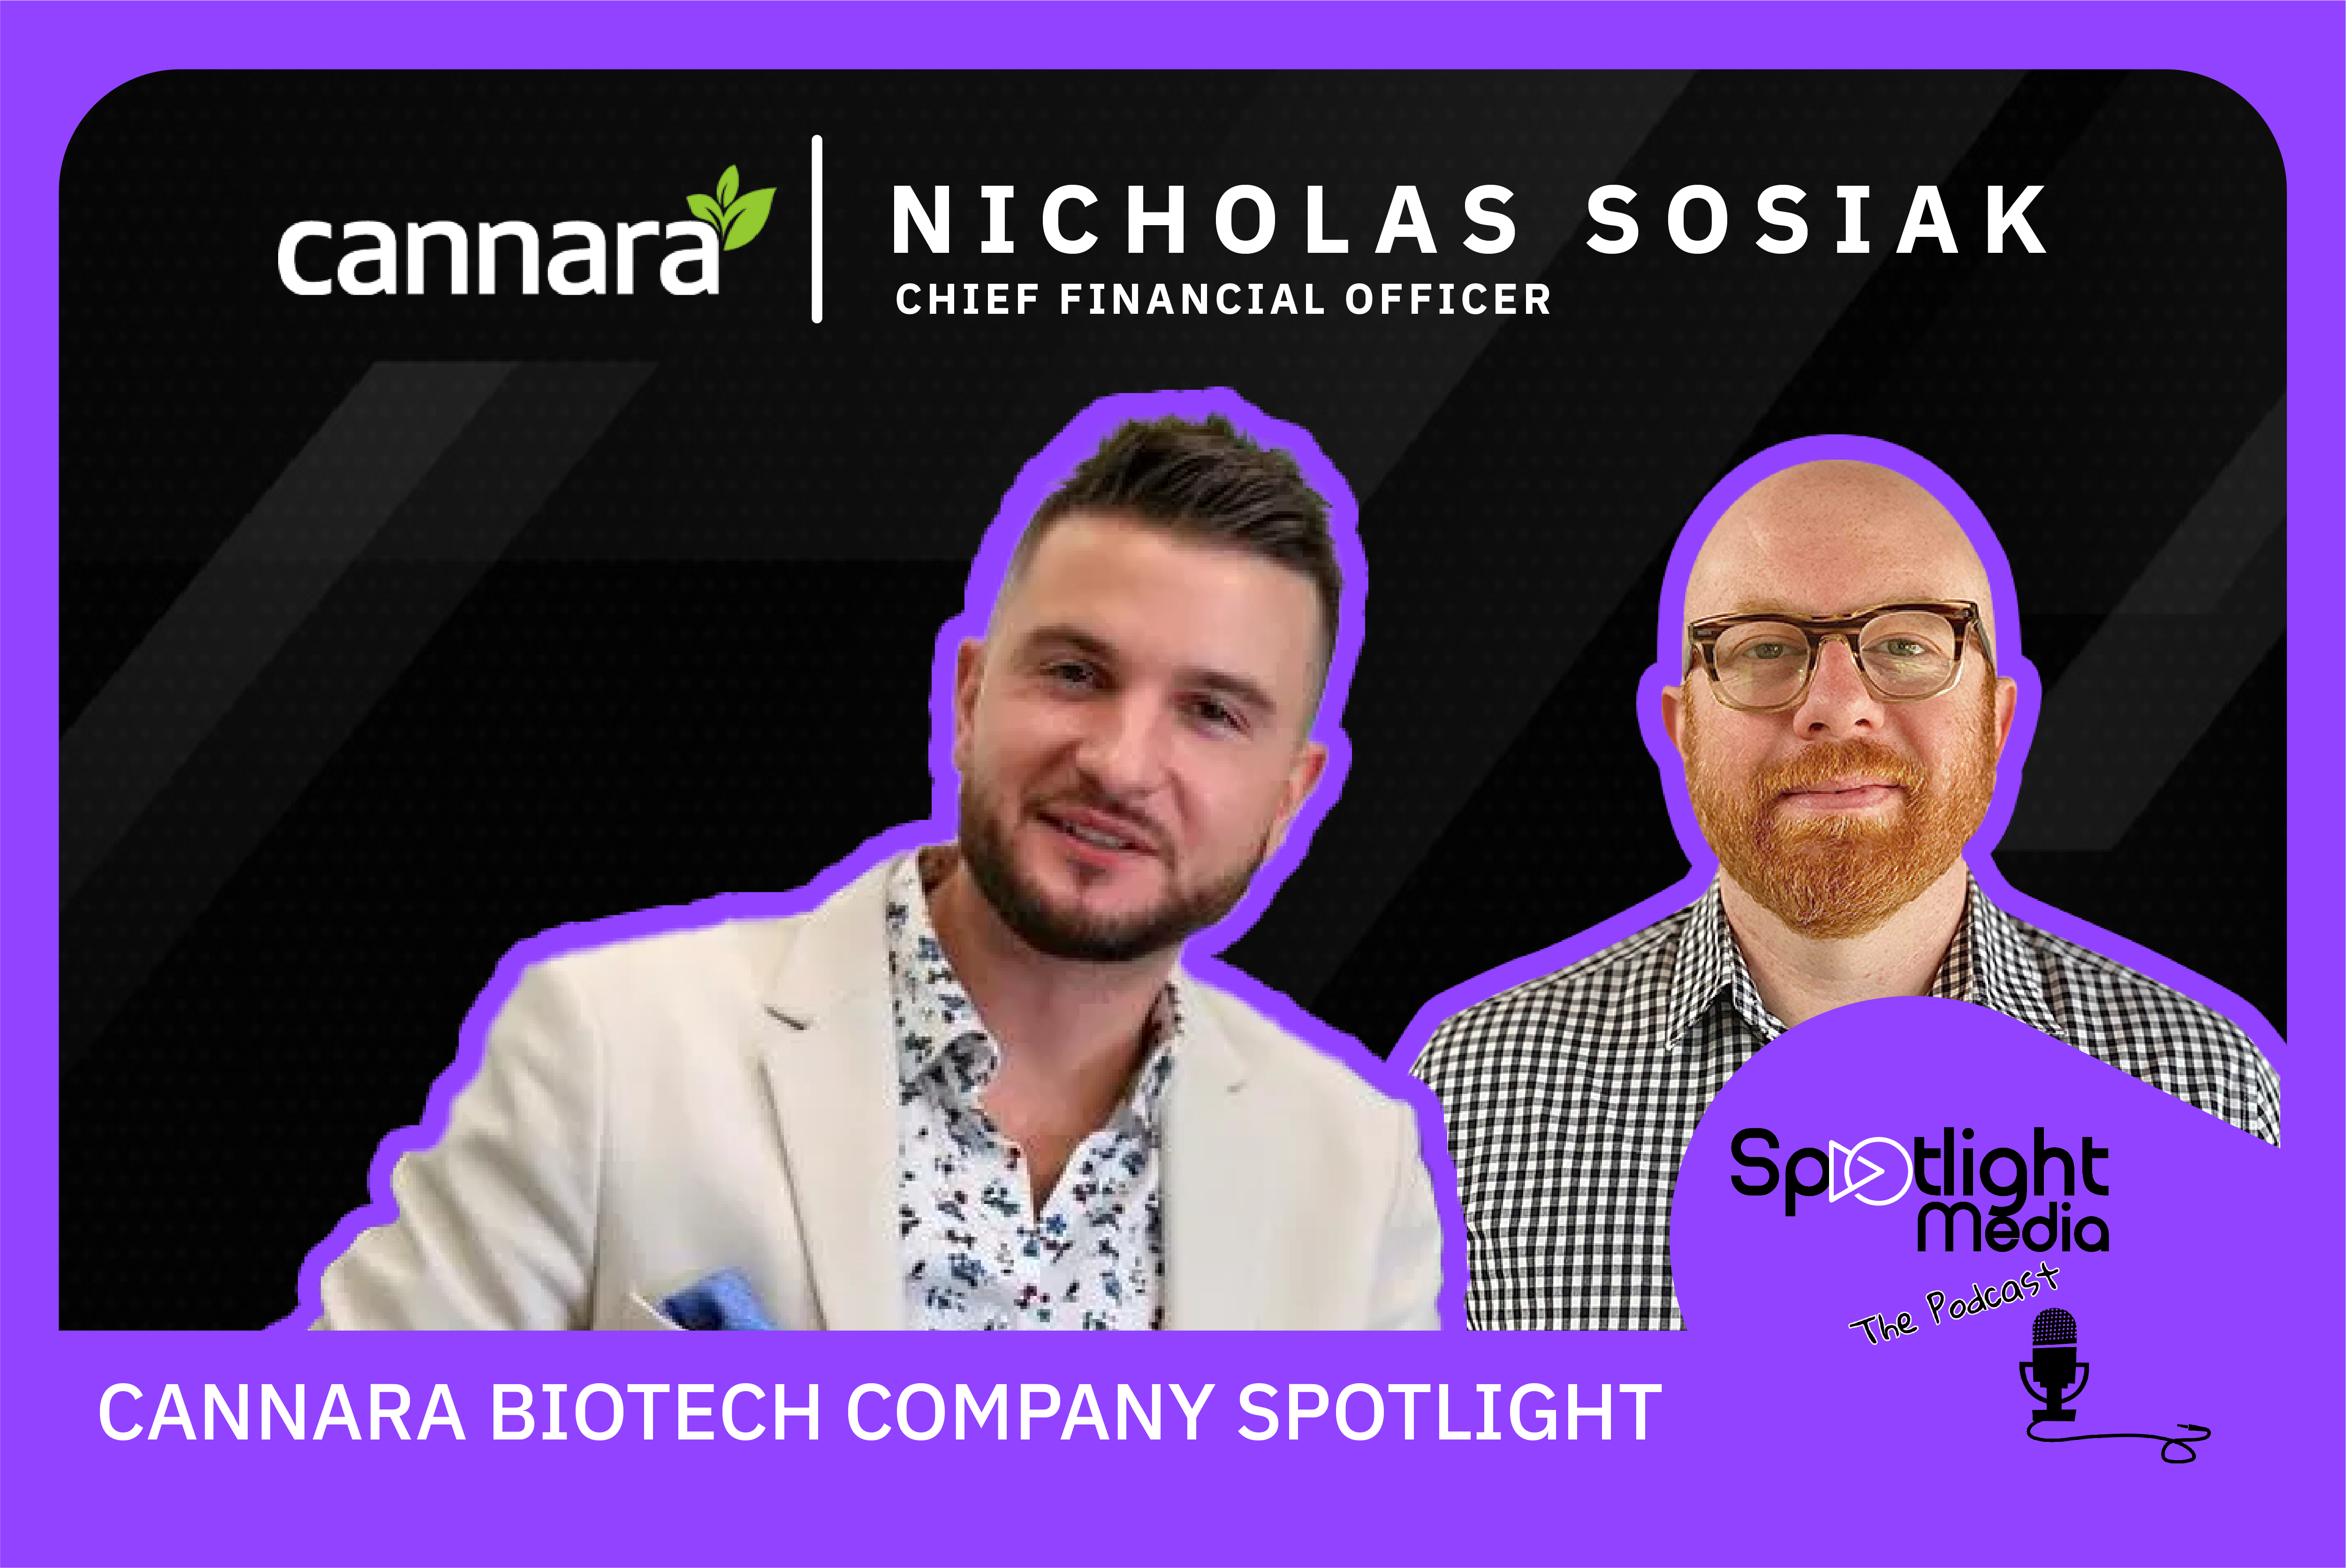 Cannara Biotech Company Spotlight